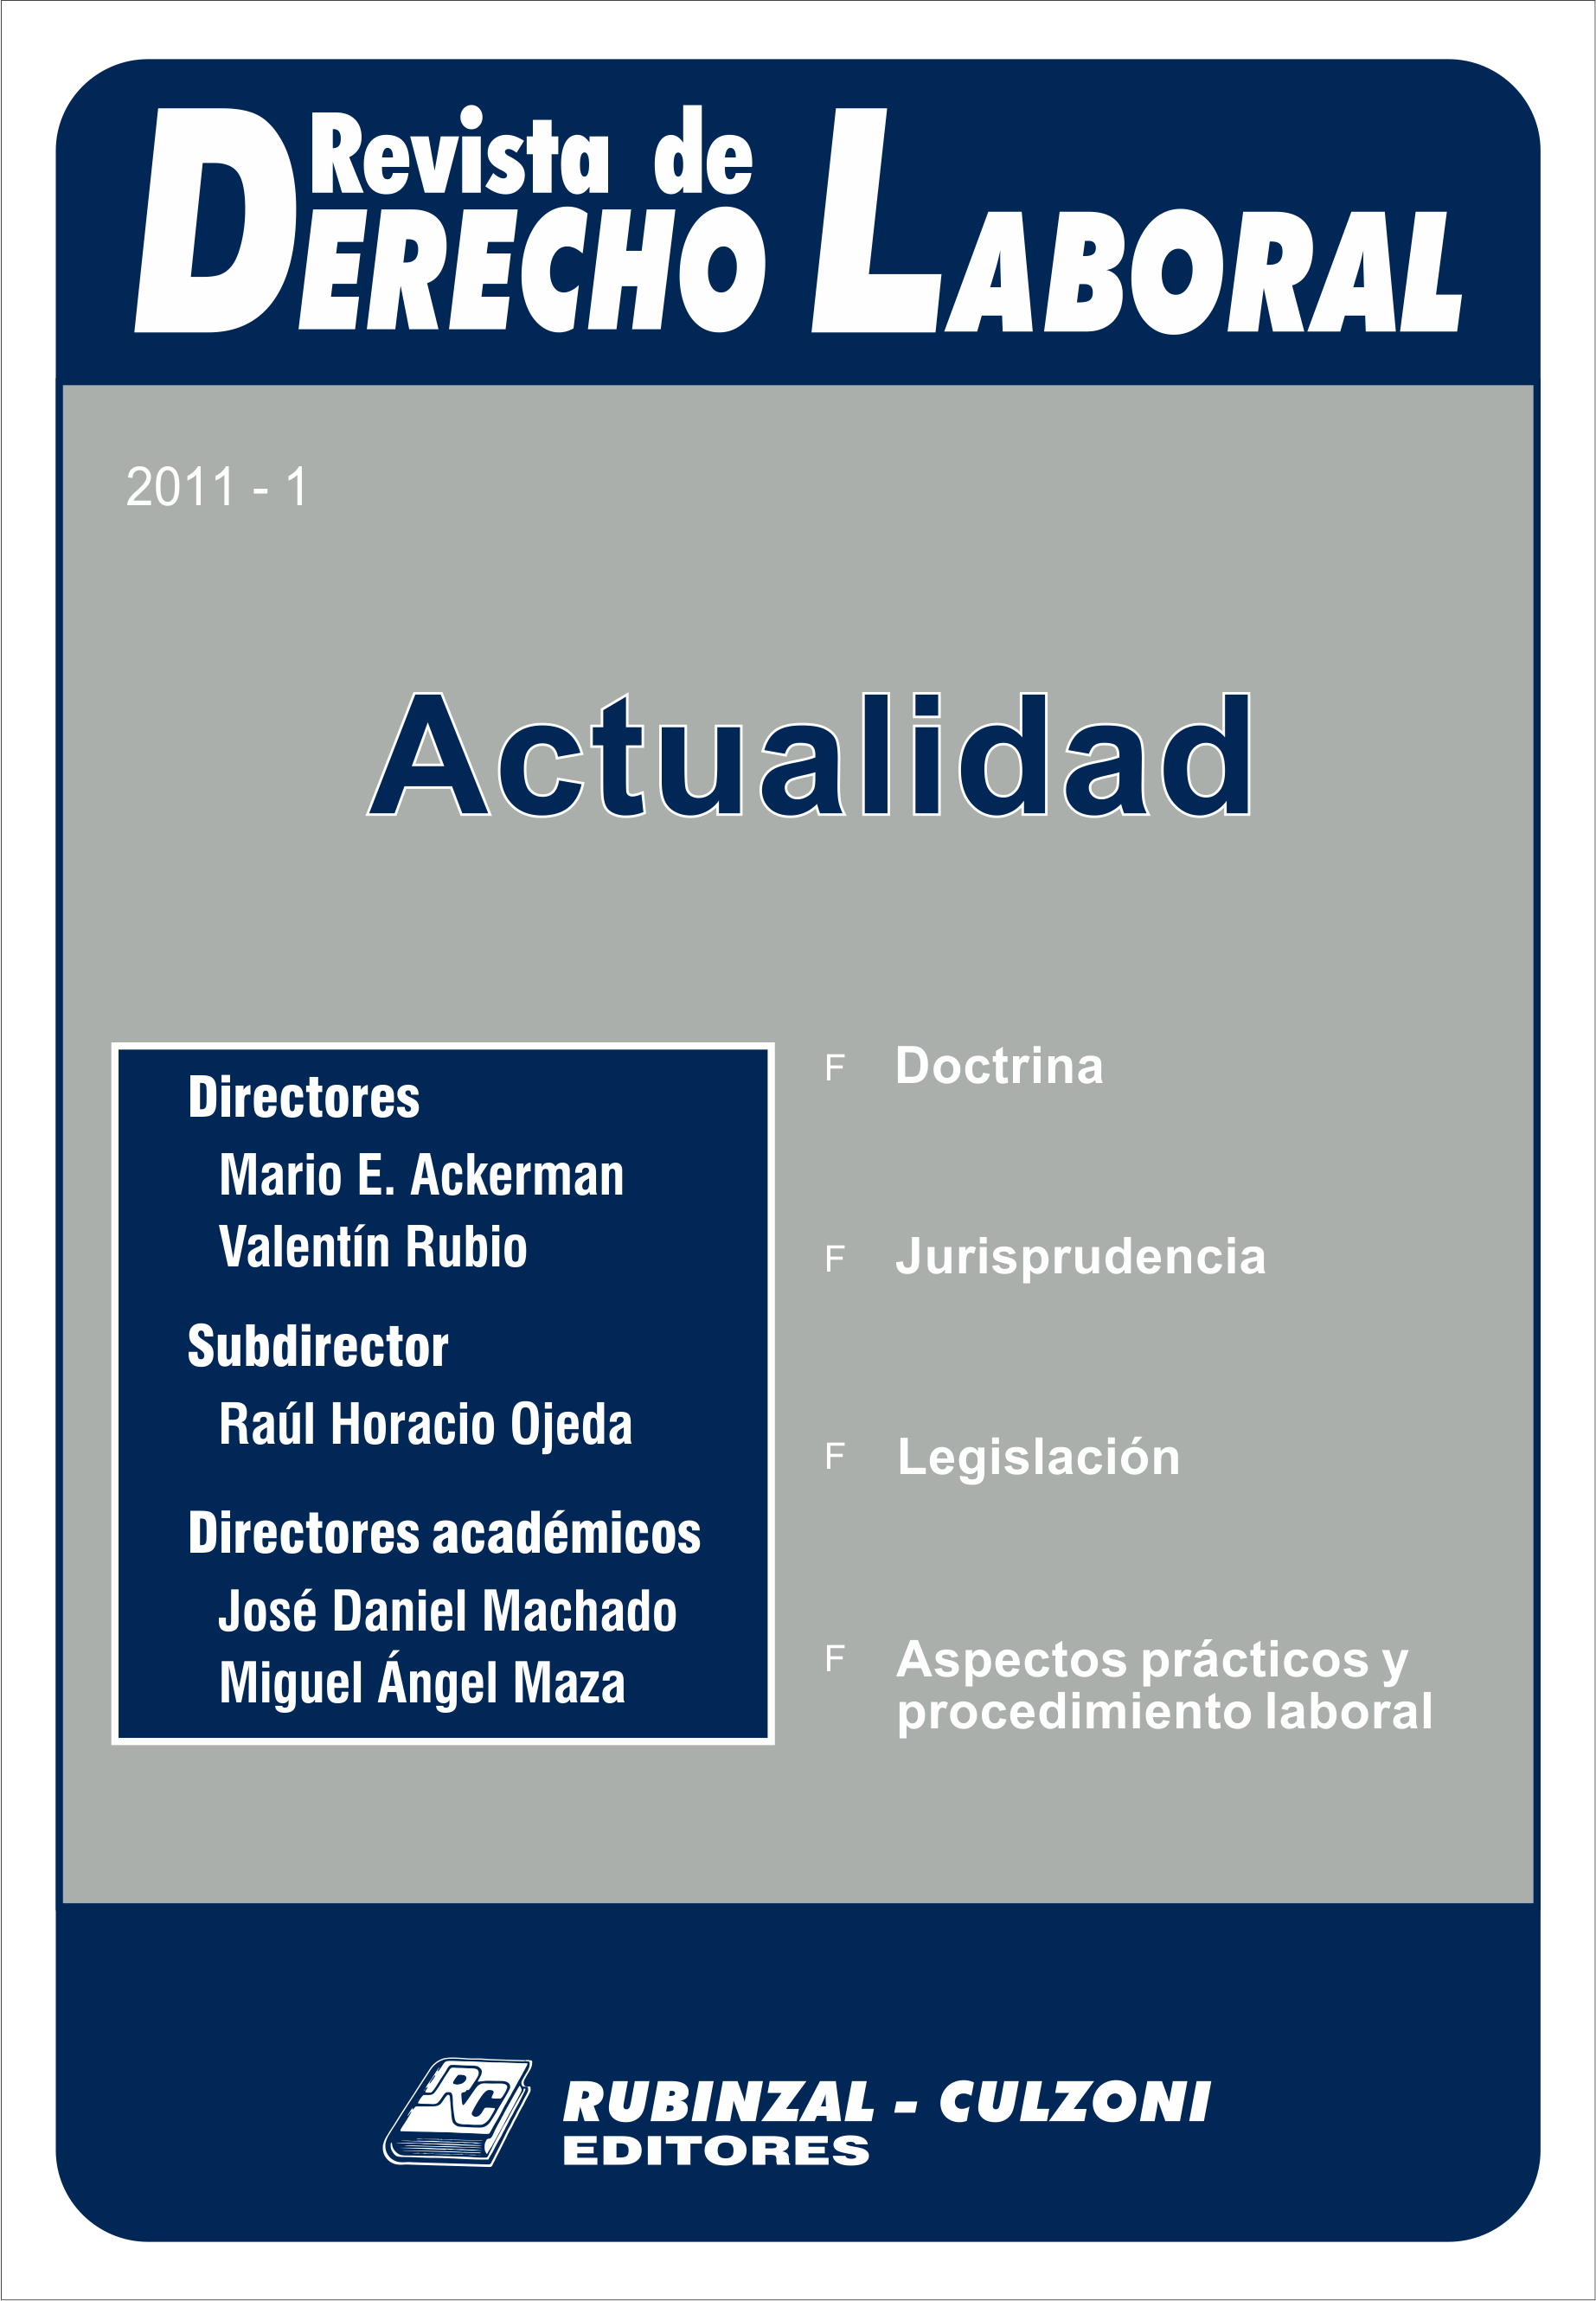 Revista de Derecho Laboral Actualidad - Año 2011 - 1